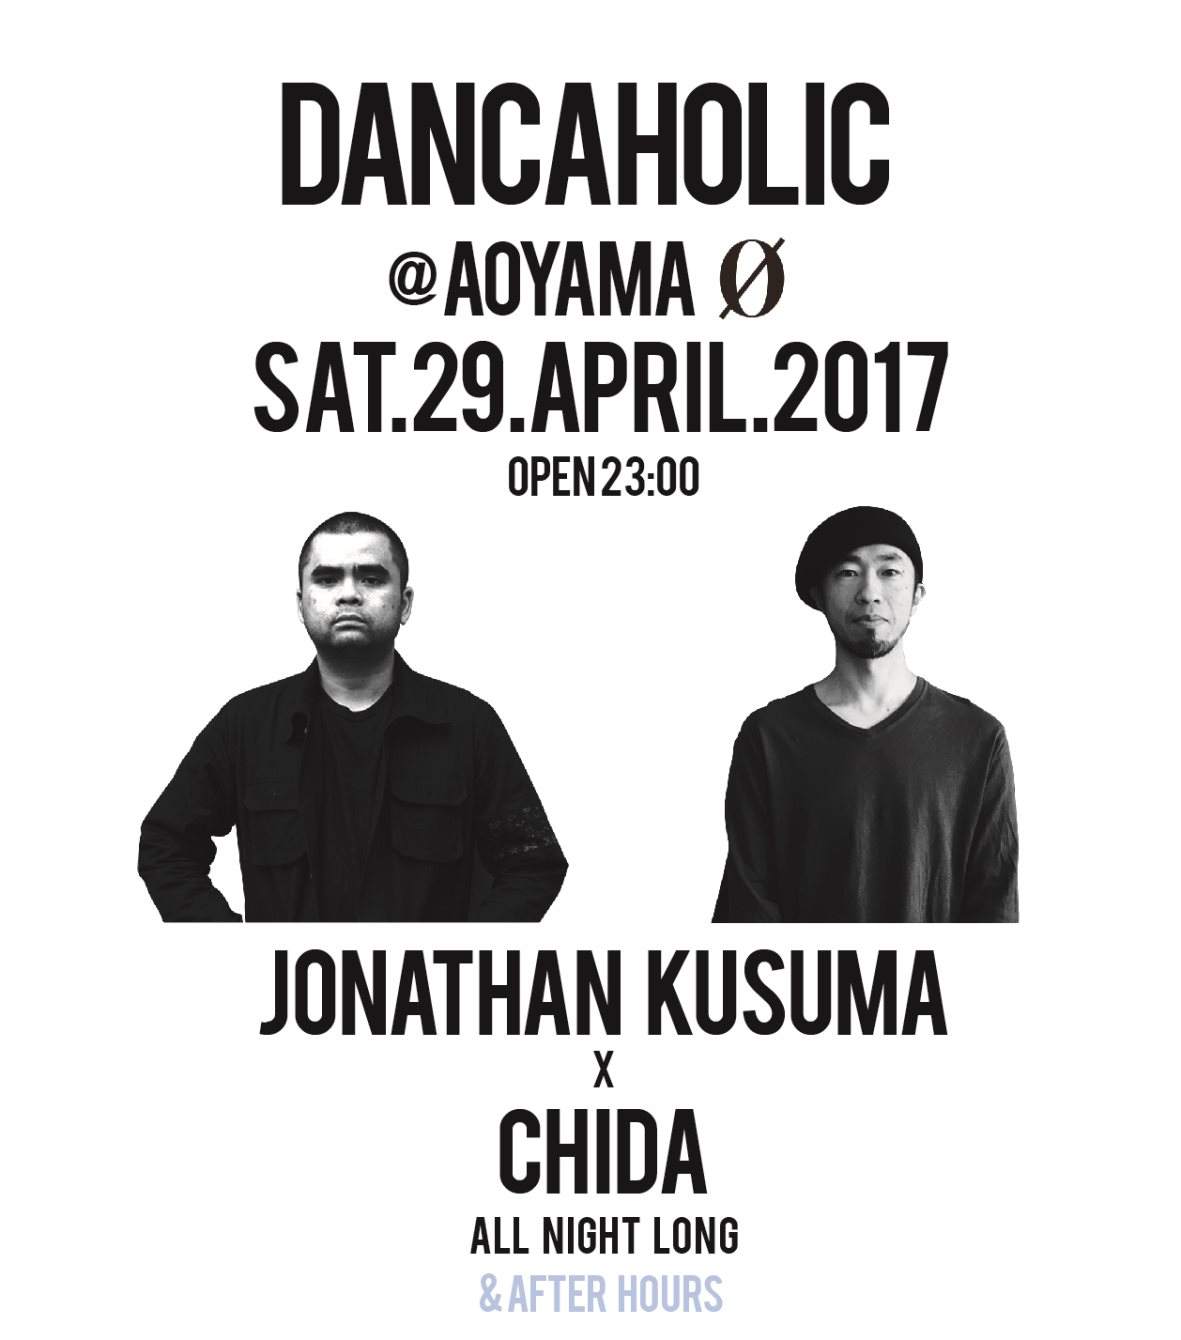 Dancaholic: Jonathan Kusuma x CHIDA All Night Long - Página frontal